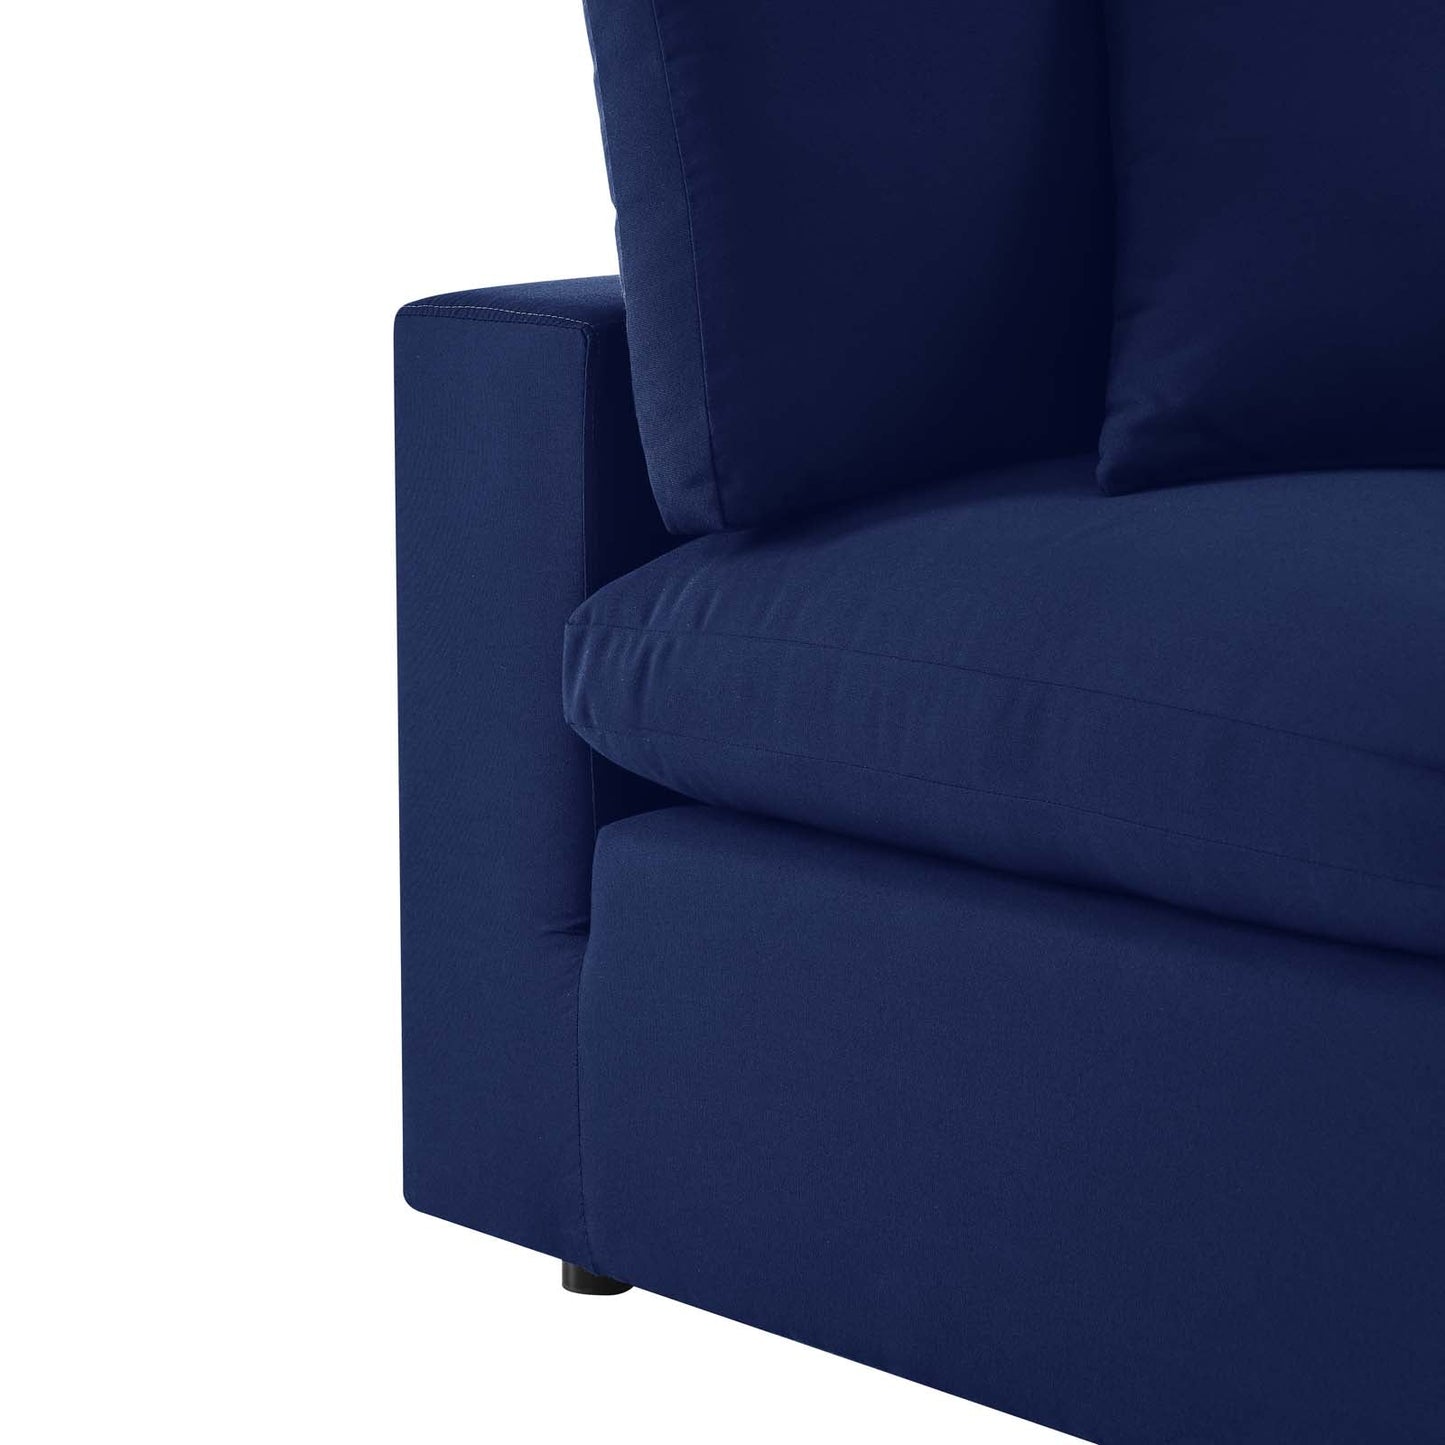 Nikora Sunbrella® Outdoor Patio Armless Chair